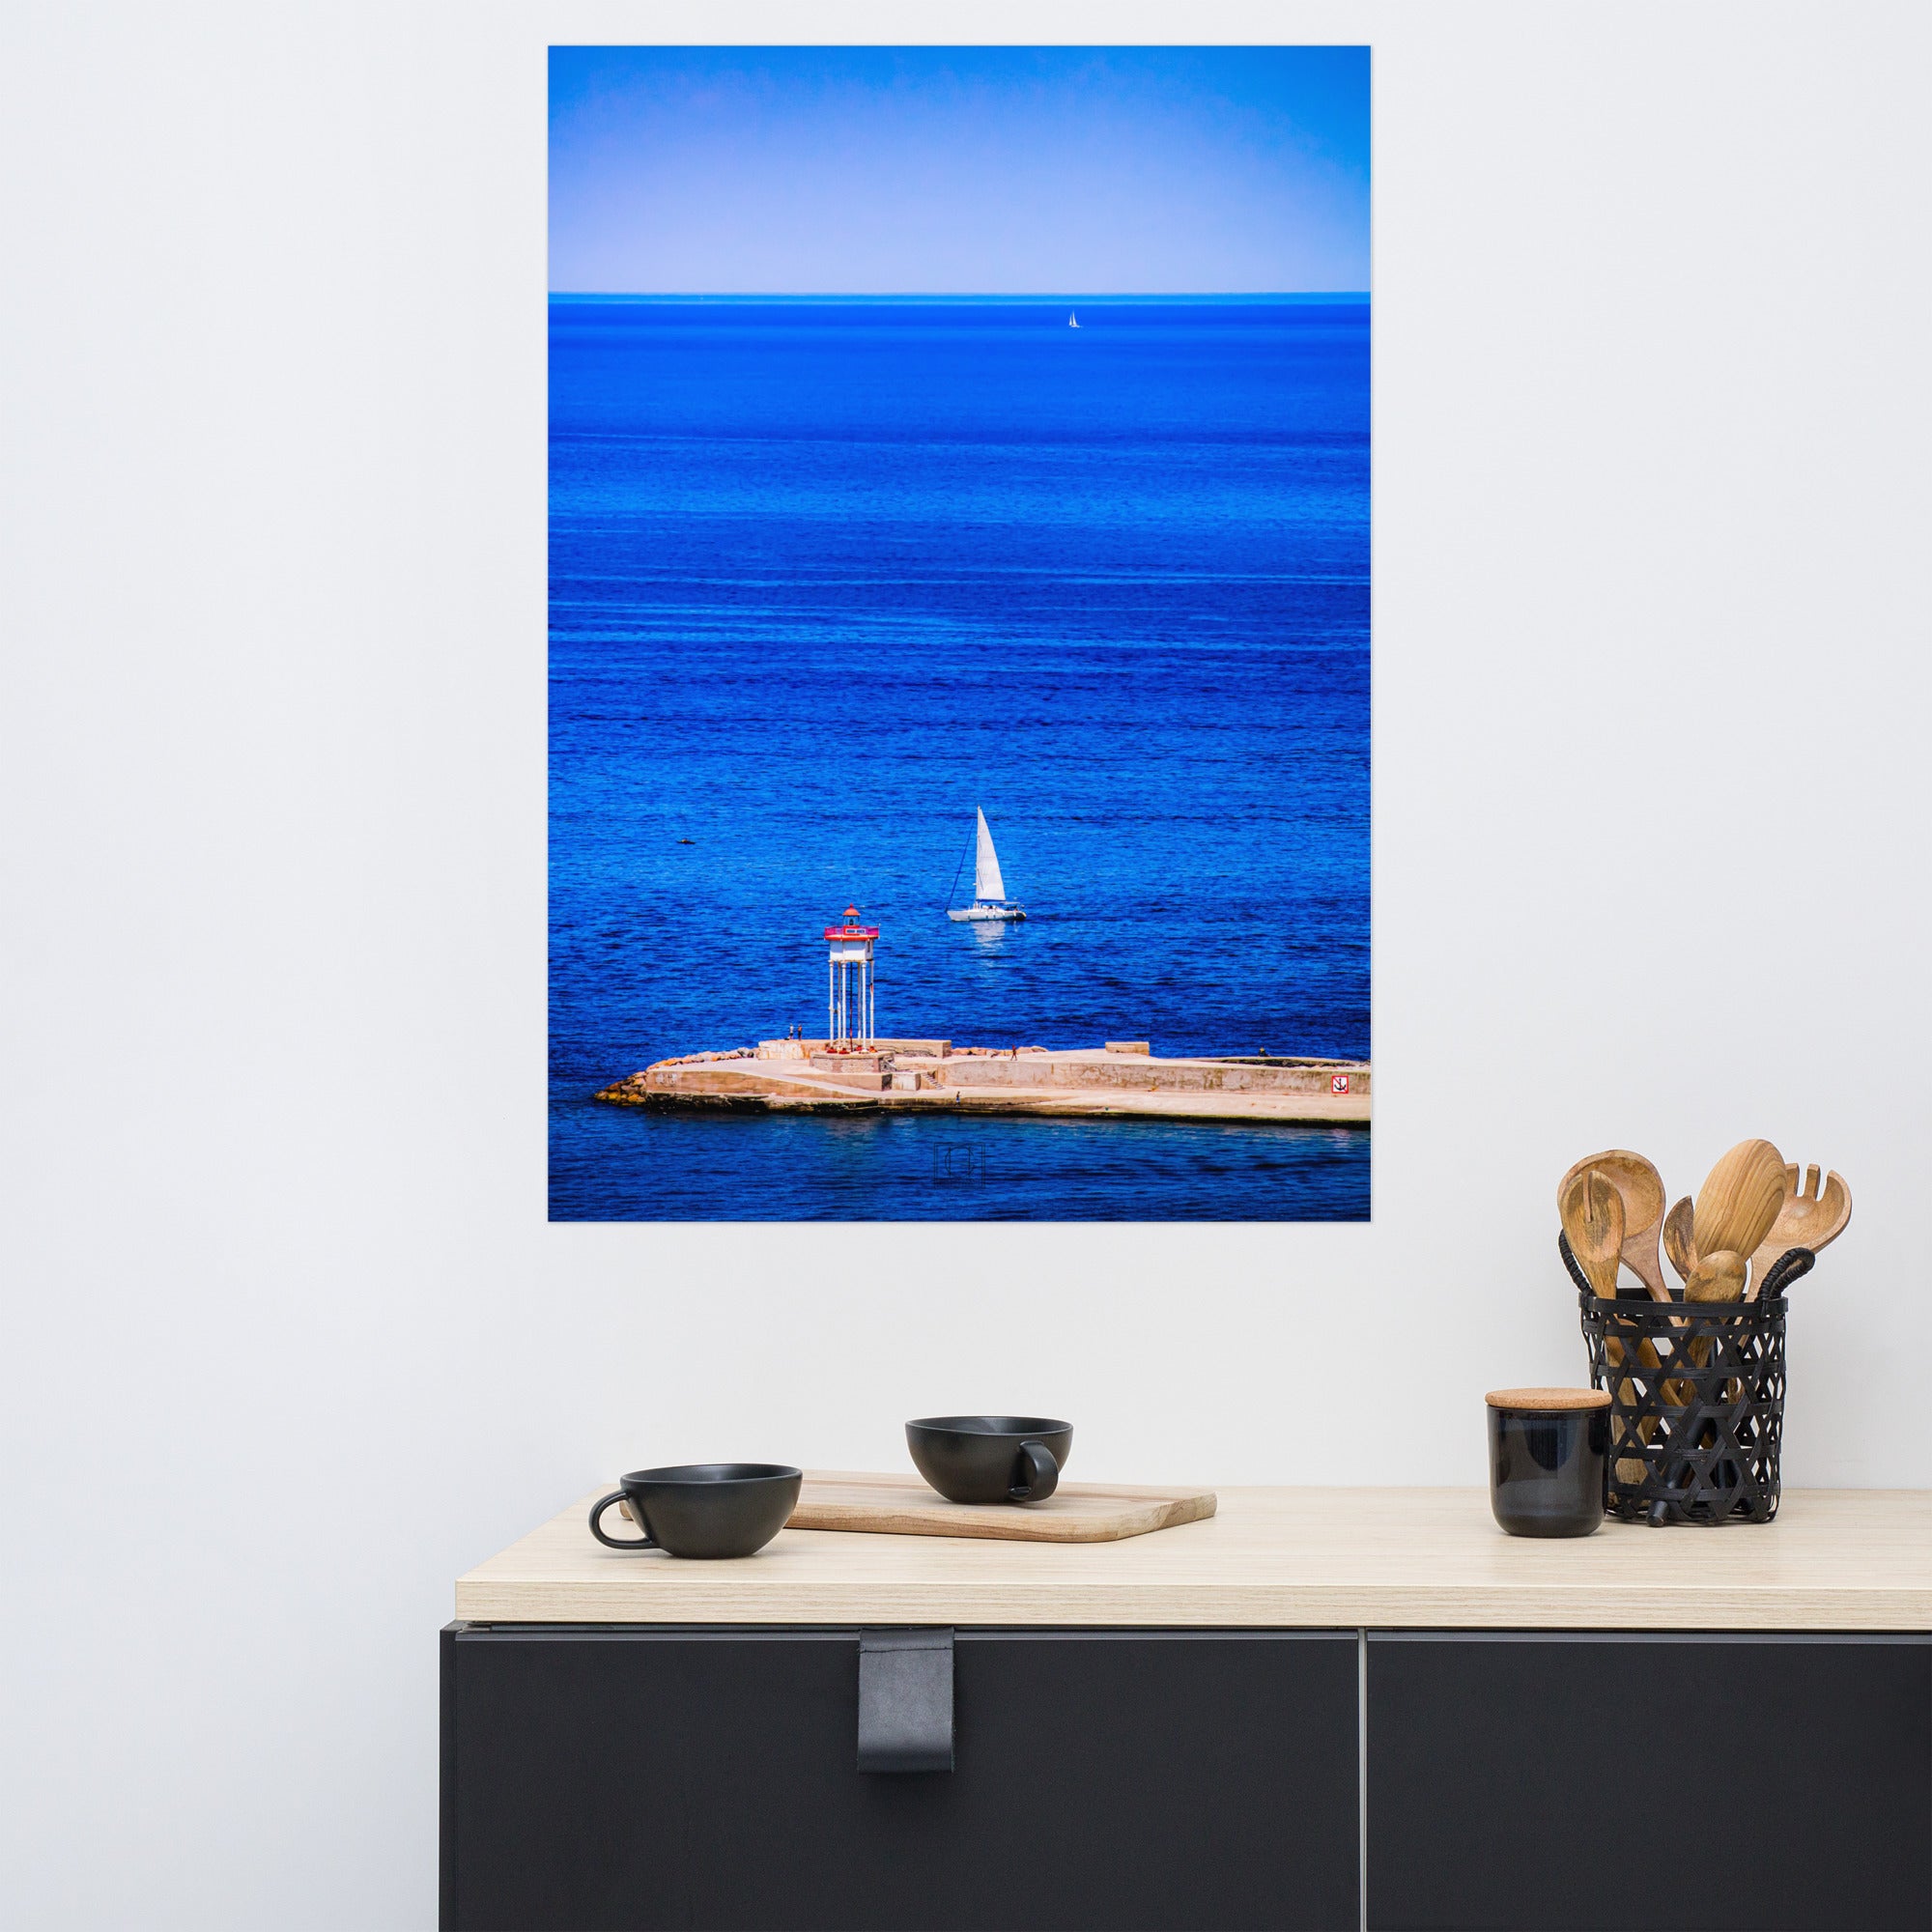 Photographie "Évasion" par Hadrien Geraci, phare et voiliers sur l'océan